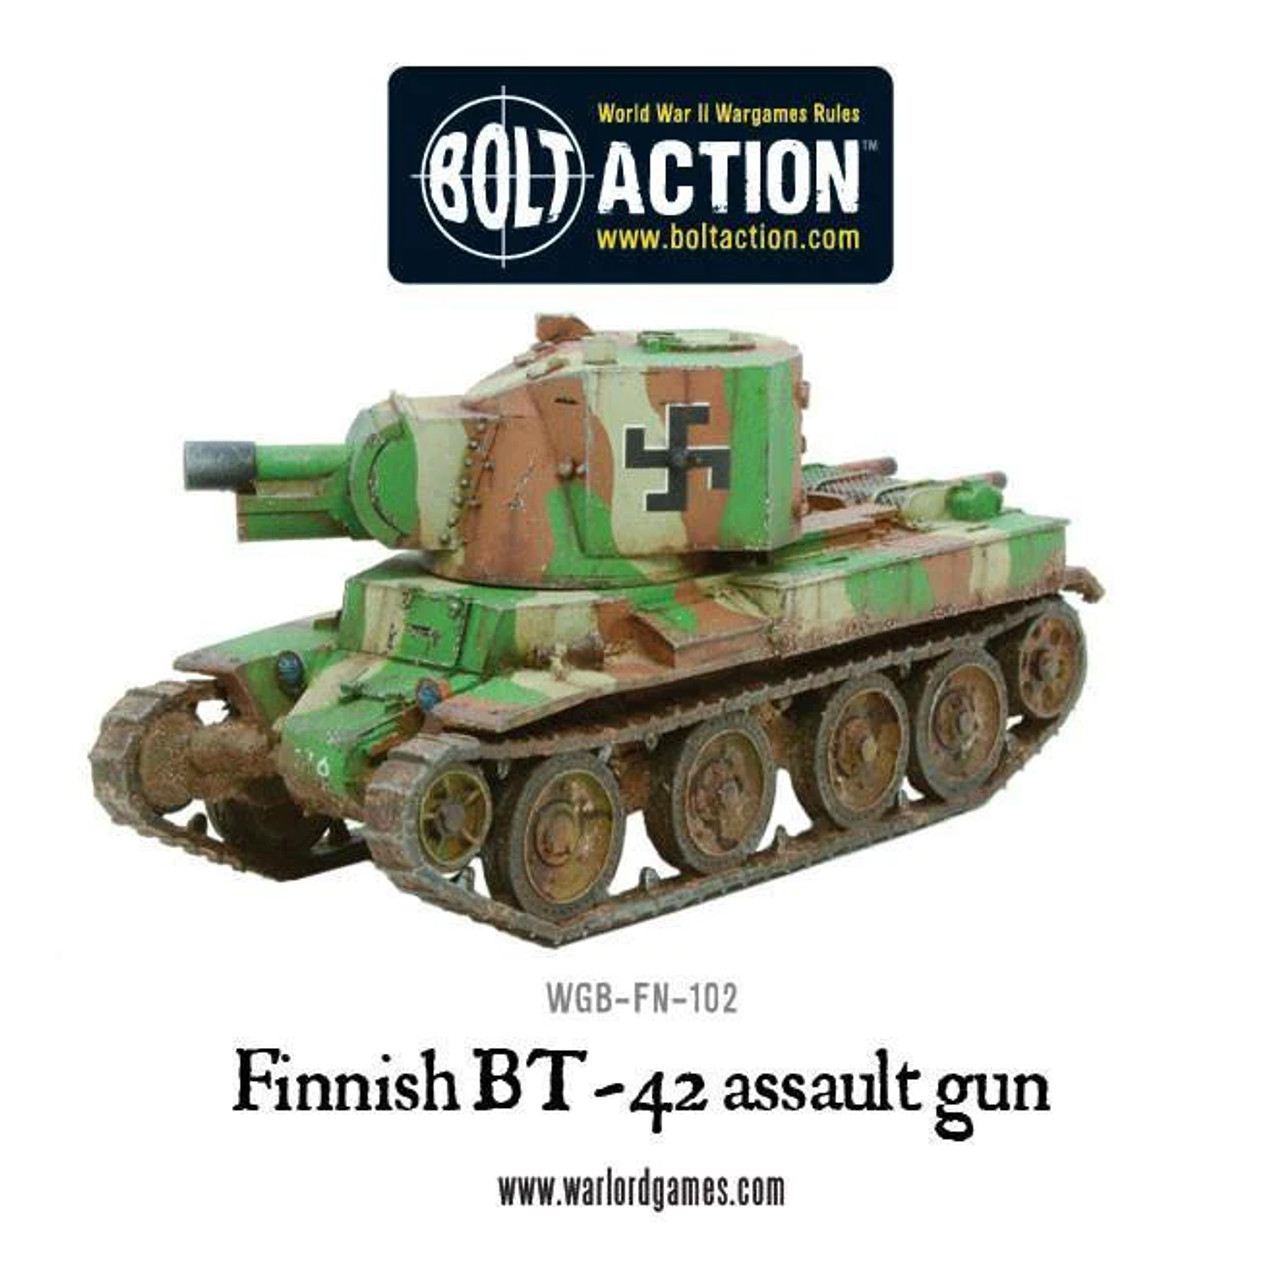 Finnish BT-42 Assault Gun - WGB-FN-102